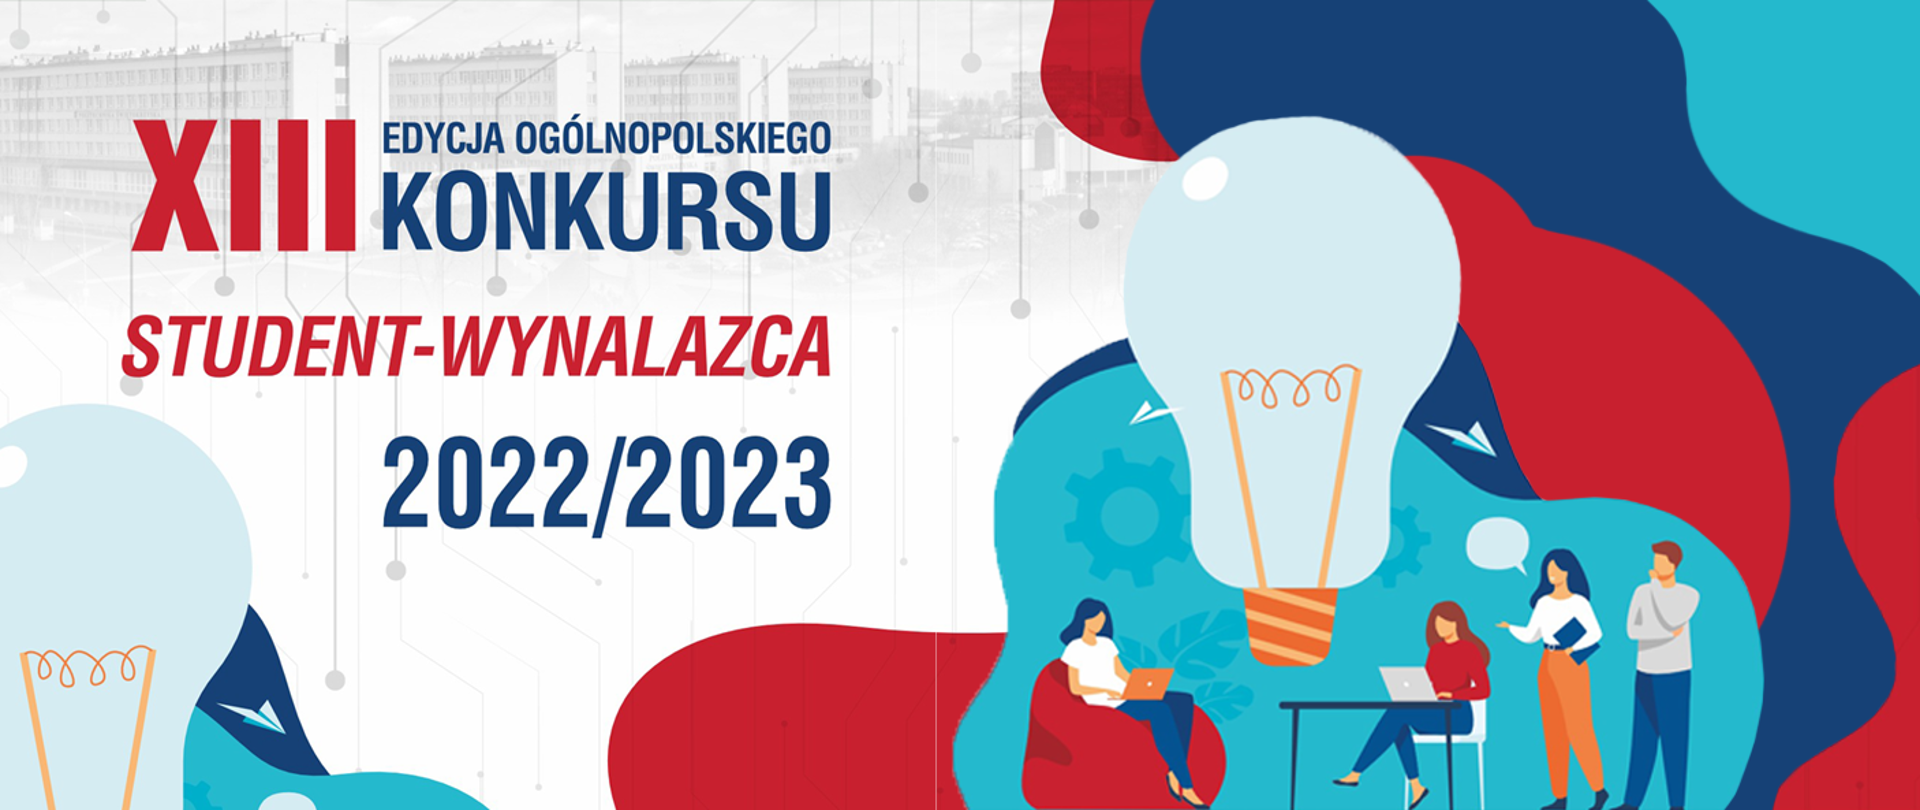 Grafika - na białym tle kolorowe plamy, sylwetki ludzi czytających książki i żarówka, obok napis XIII edycja ogólnopolskiego konkursu student - wynalazca 2022-2023.